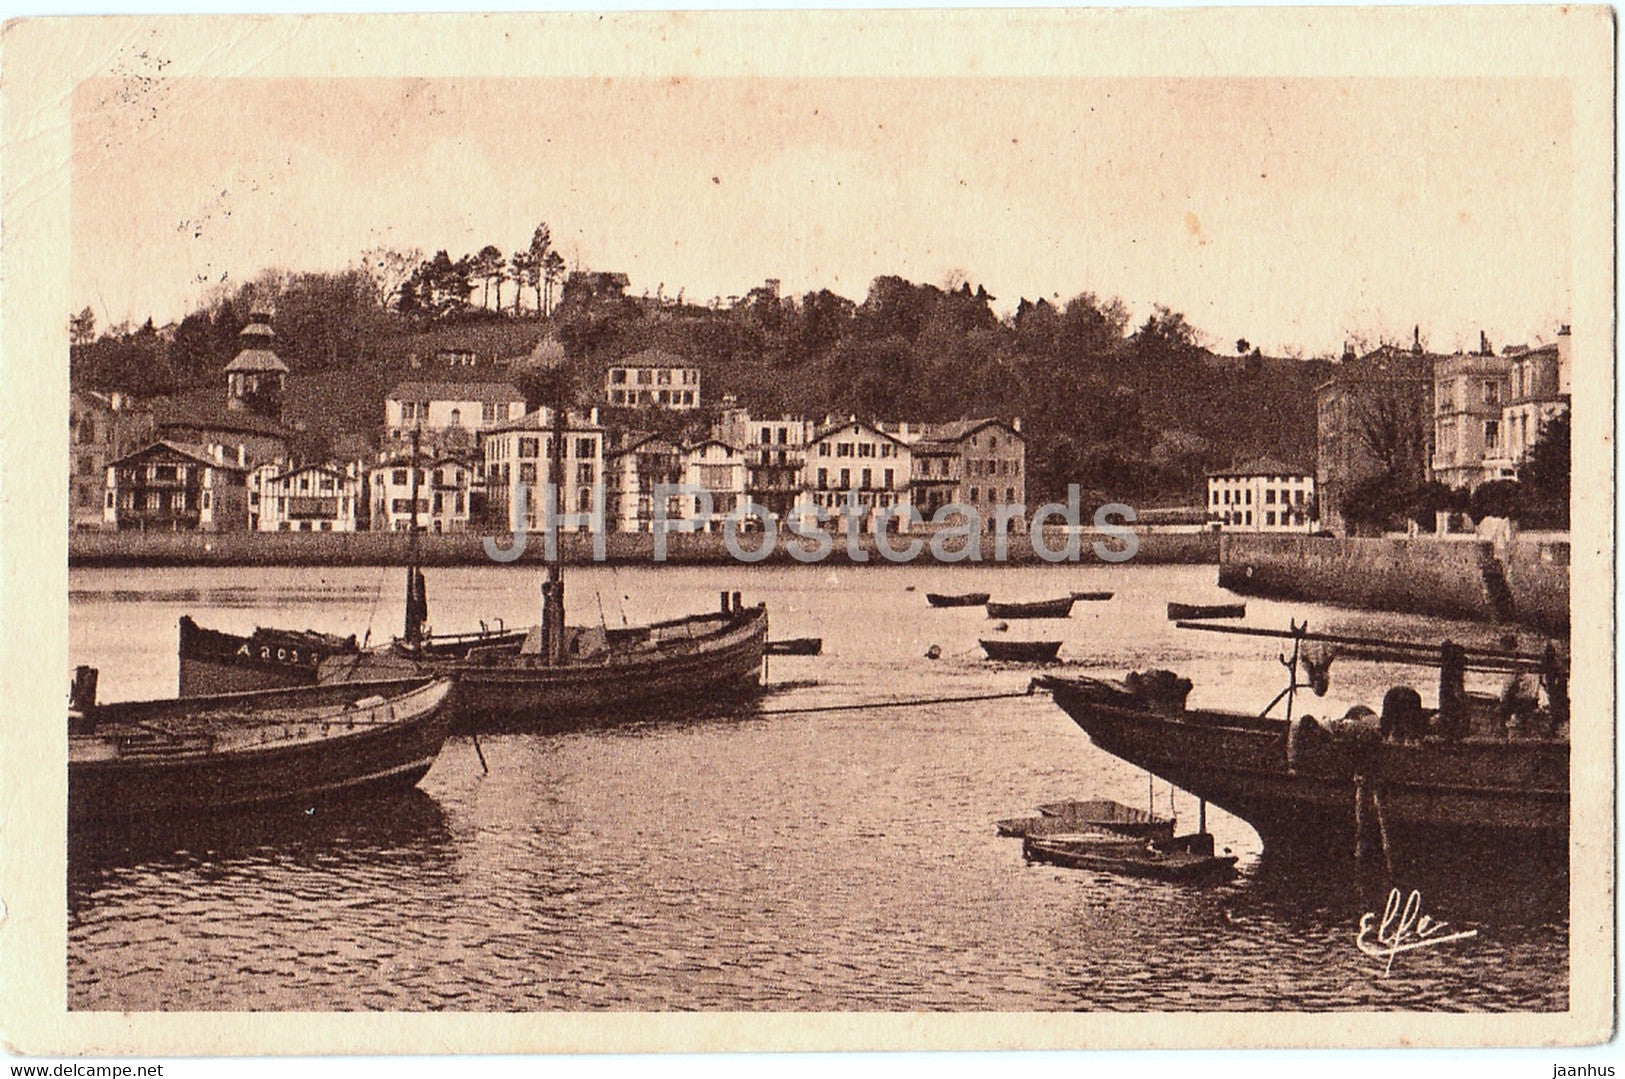 Saint Jean de Luz - Vue Generale de Ciboure - boat - ship - 1427 - old postcard - 1938 - France - used - JH Postcards